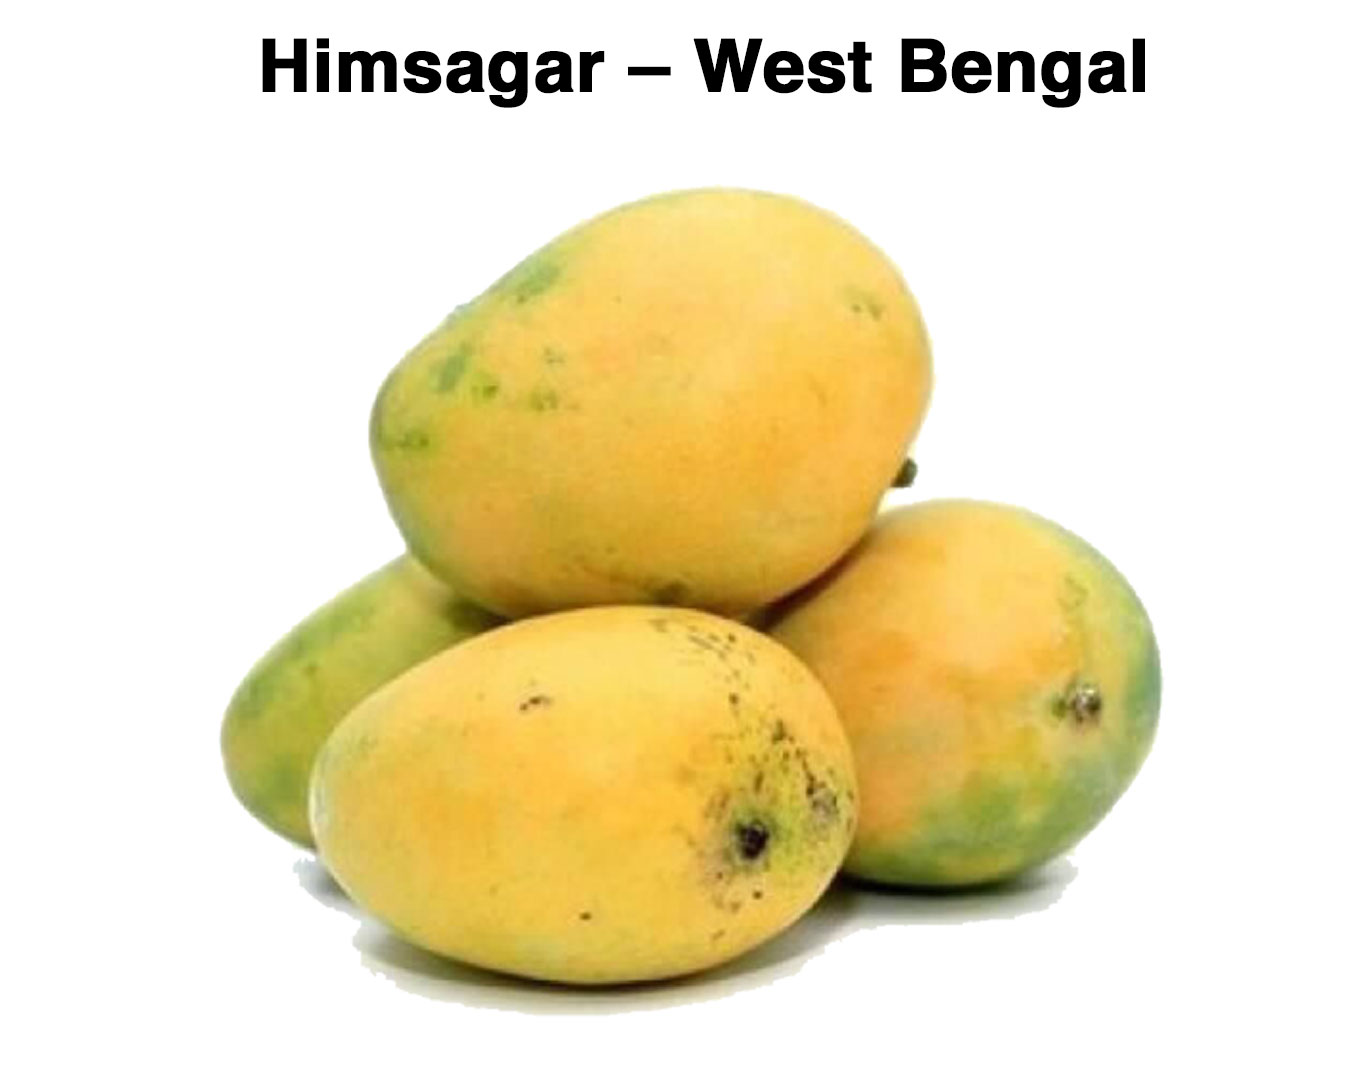 varieties of mangoes - Himsagar – West Bengal